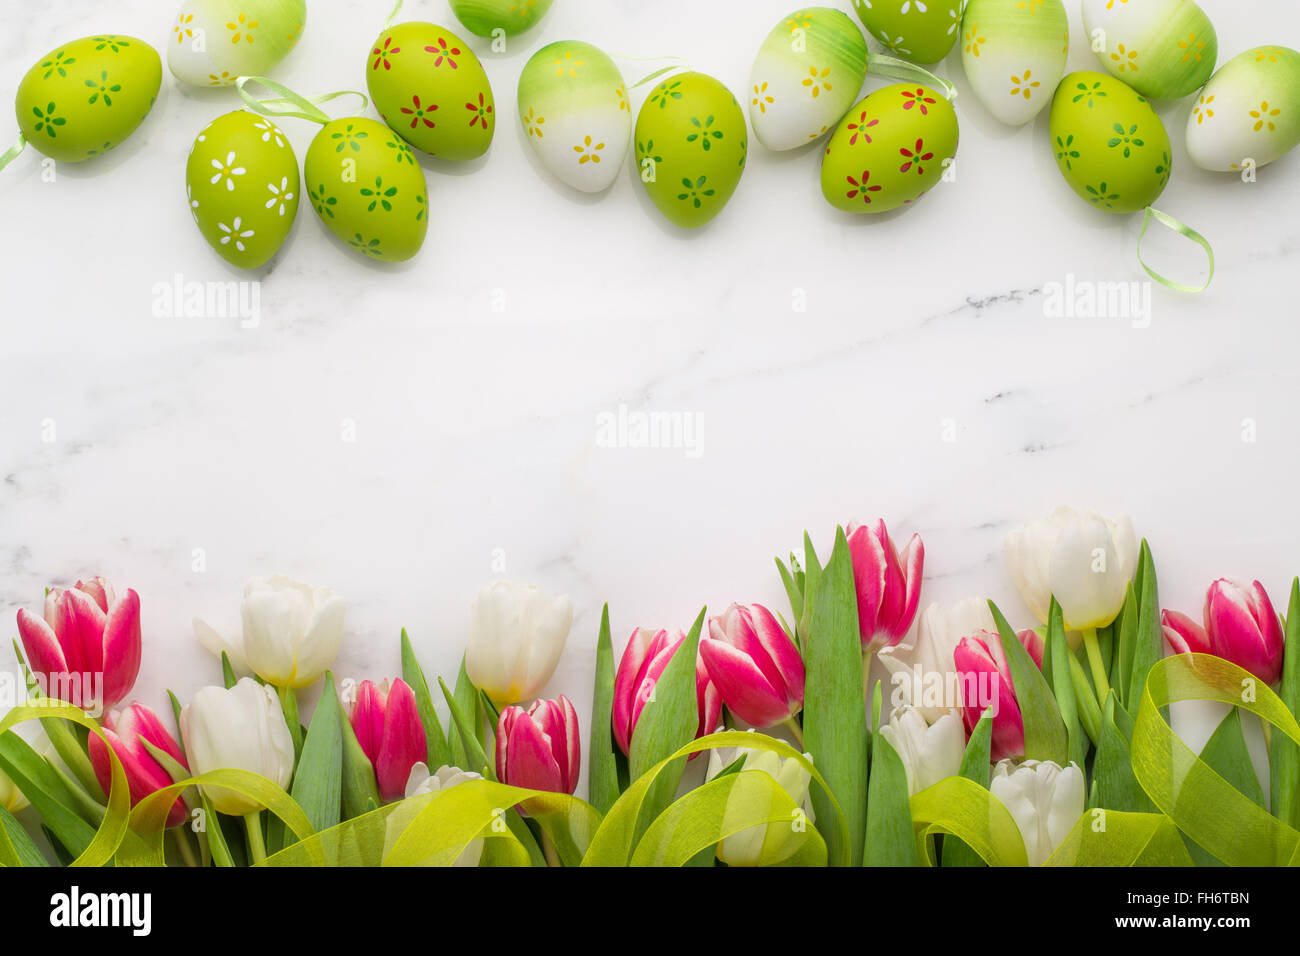 Les oeufs de Pâques et des tulipes sur le marbre blanc Banque D'Images